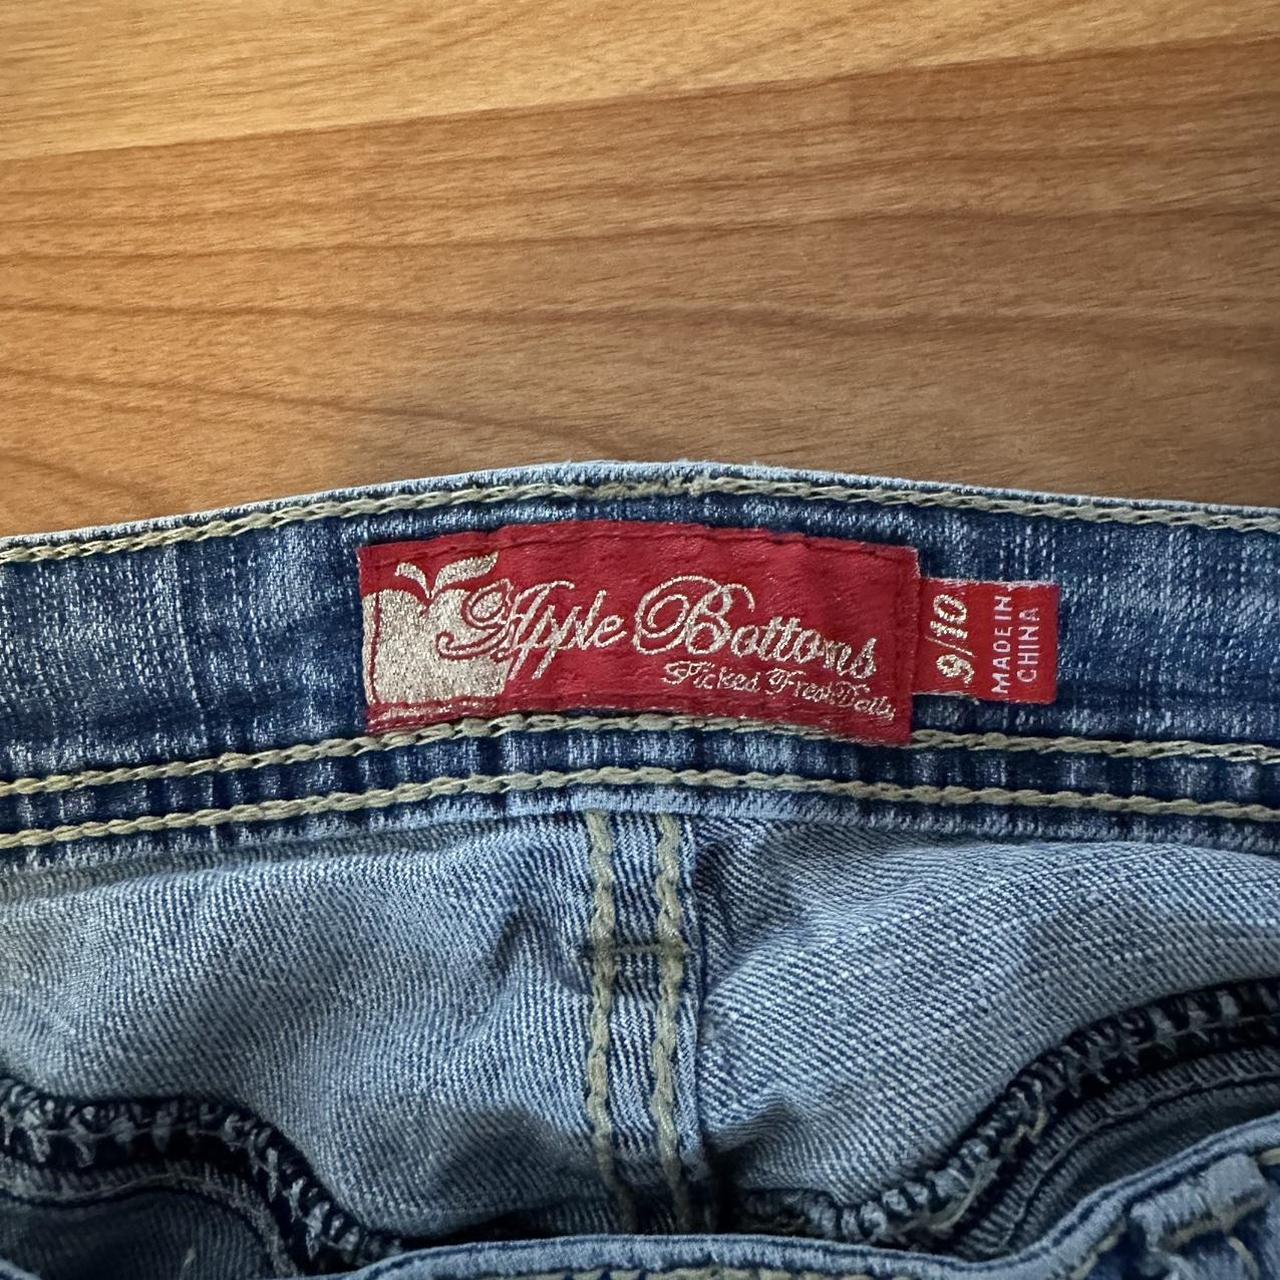 APPLE BOTTOMS JEANS low rise jeans Size: 9/10 but... - Depop